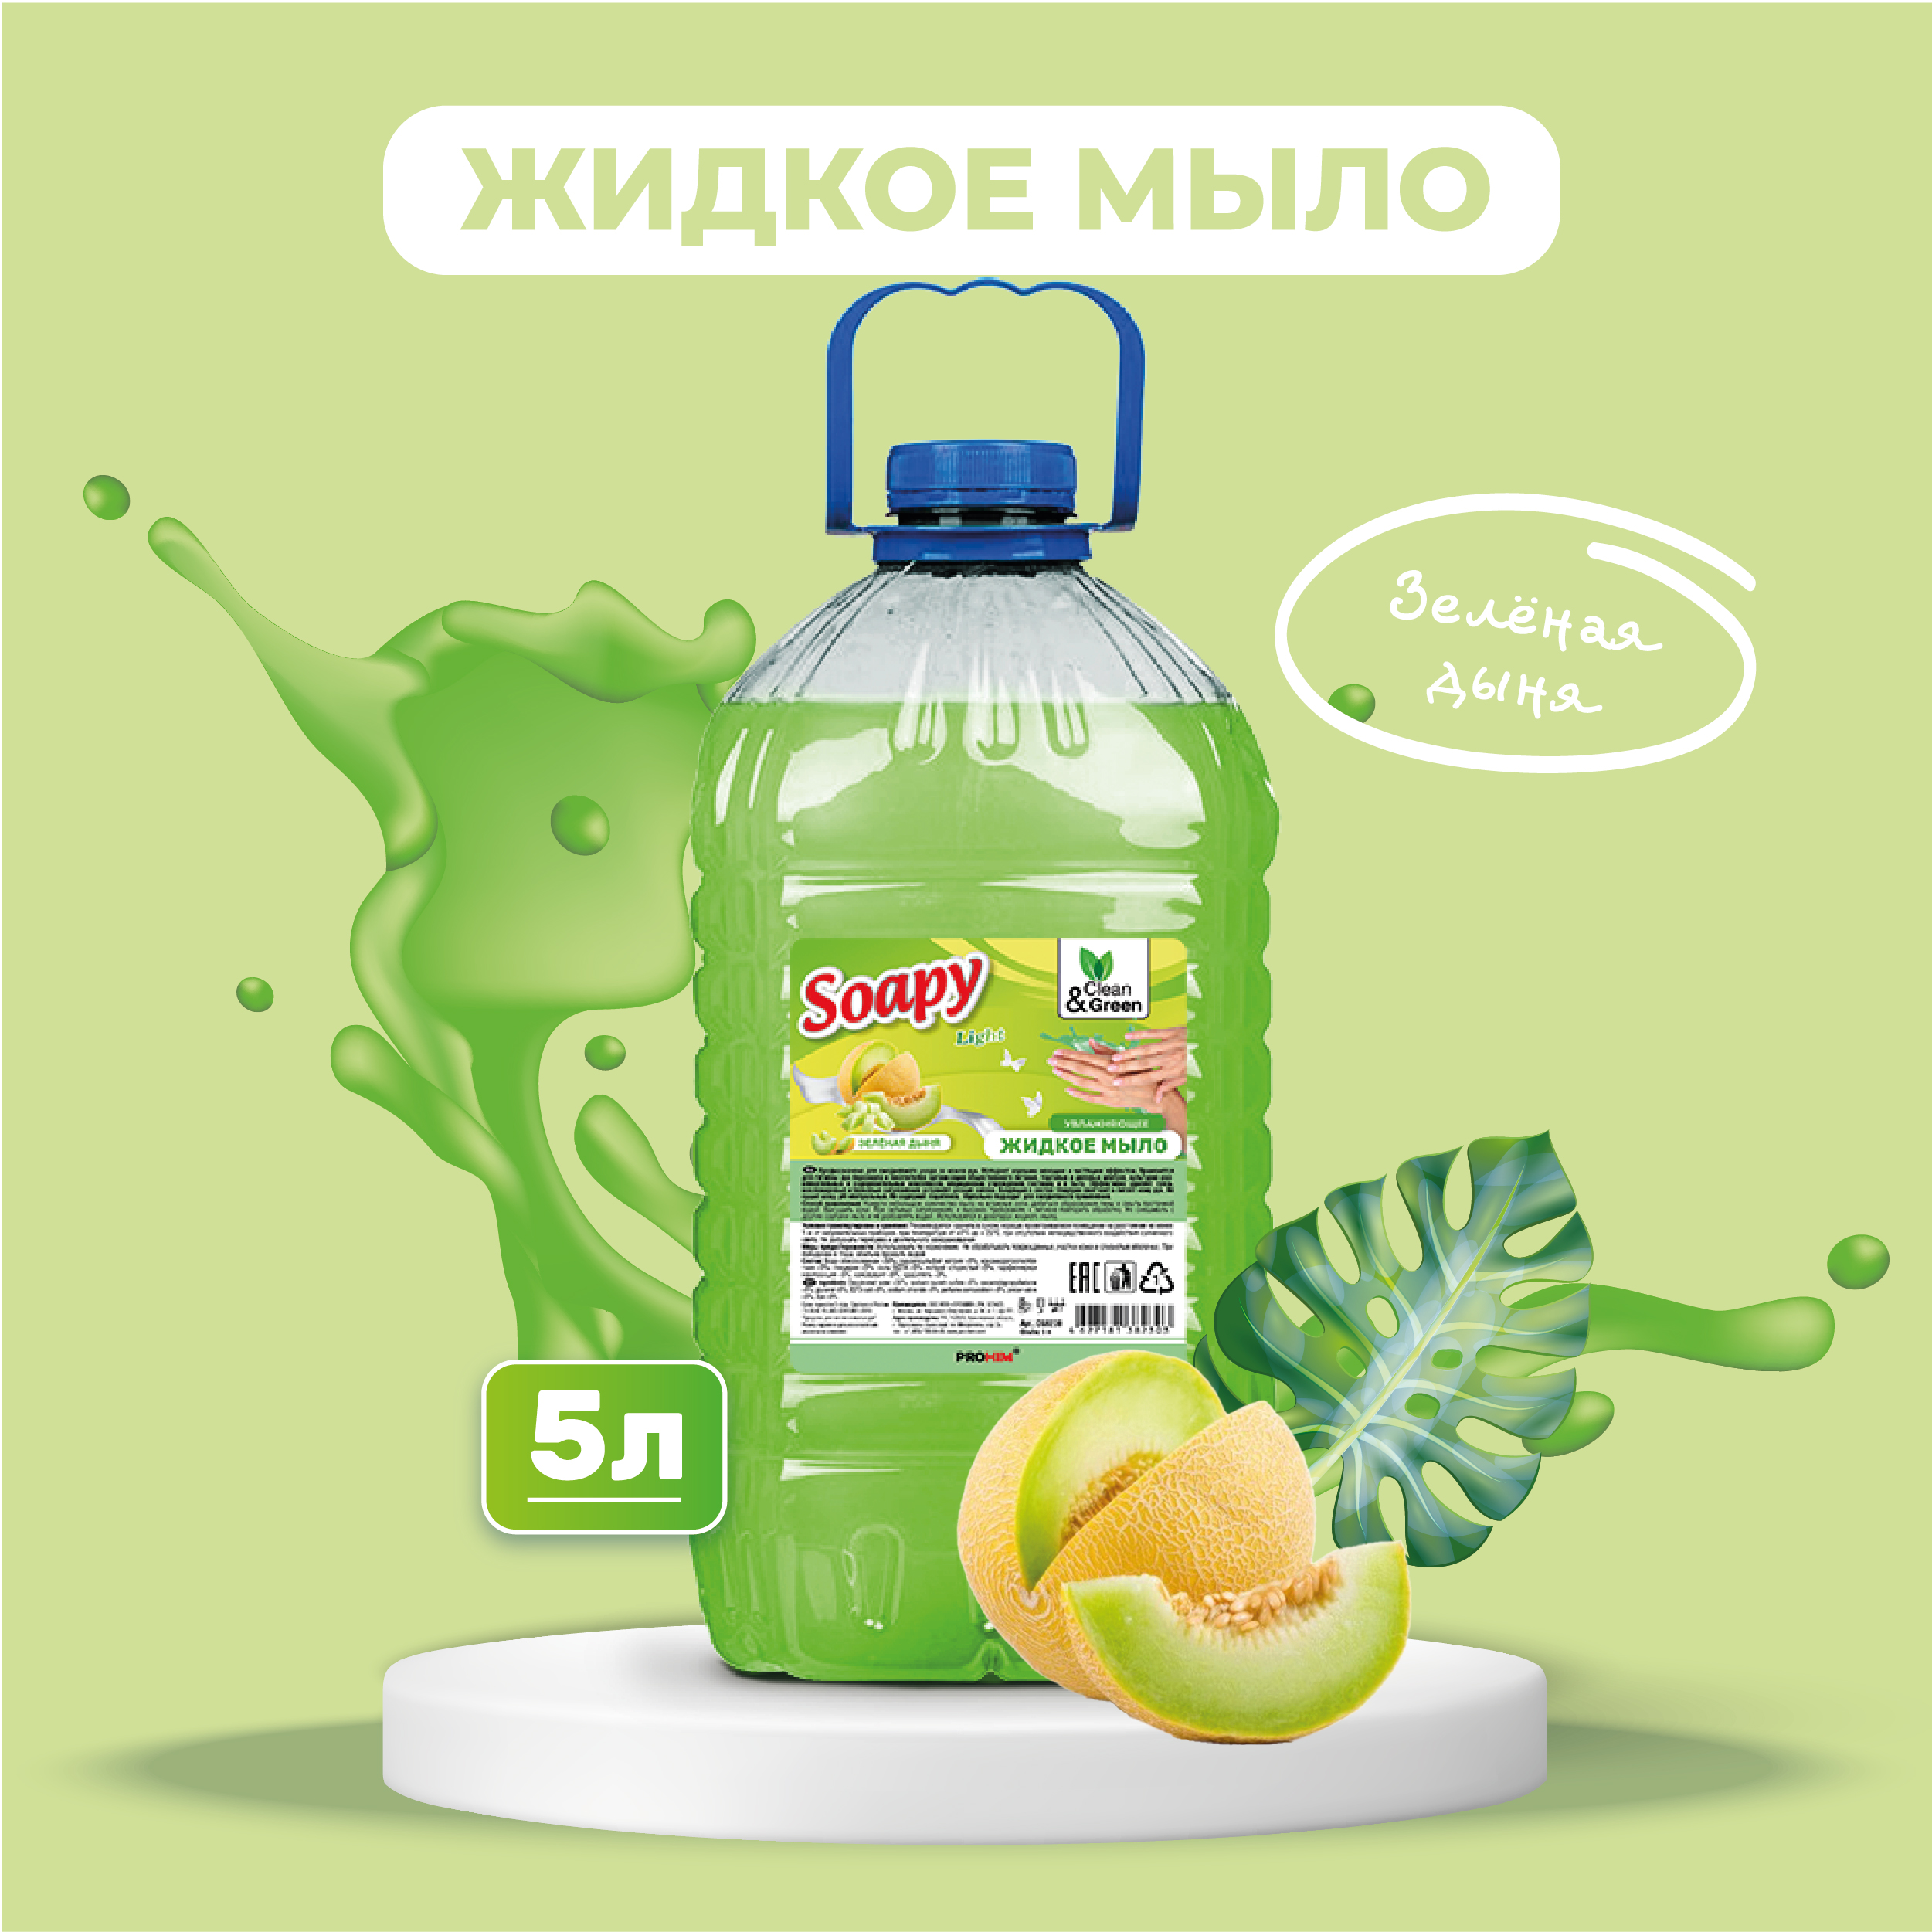 Жидкое мыло Clean&Green Soapy эконом Зеленая дыня 5 л мыло жидкое synergetic имбирь и бергамот антибактериальное с эффектом увлажнения 1 л